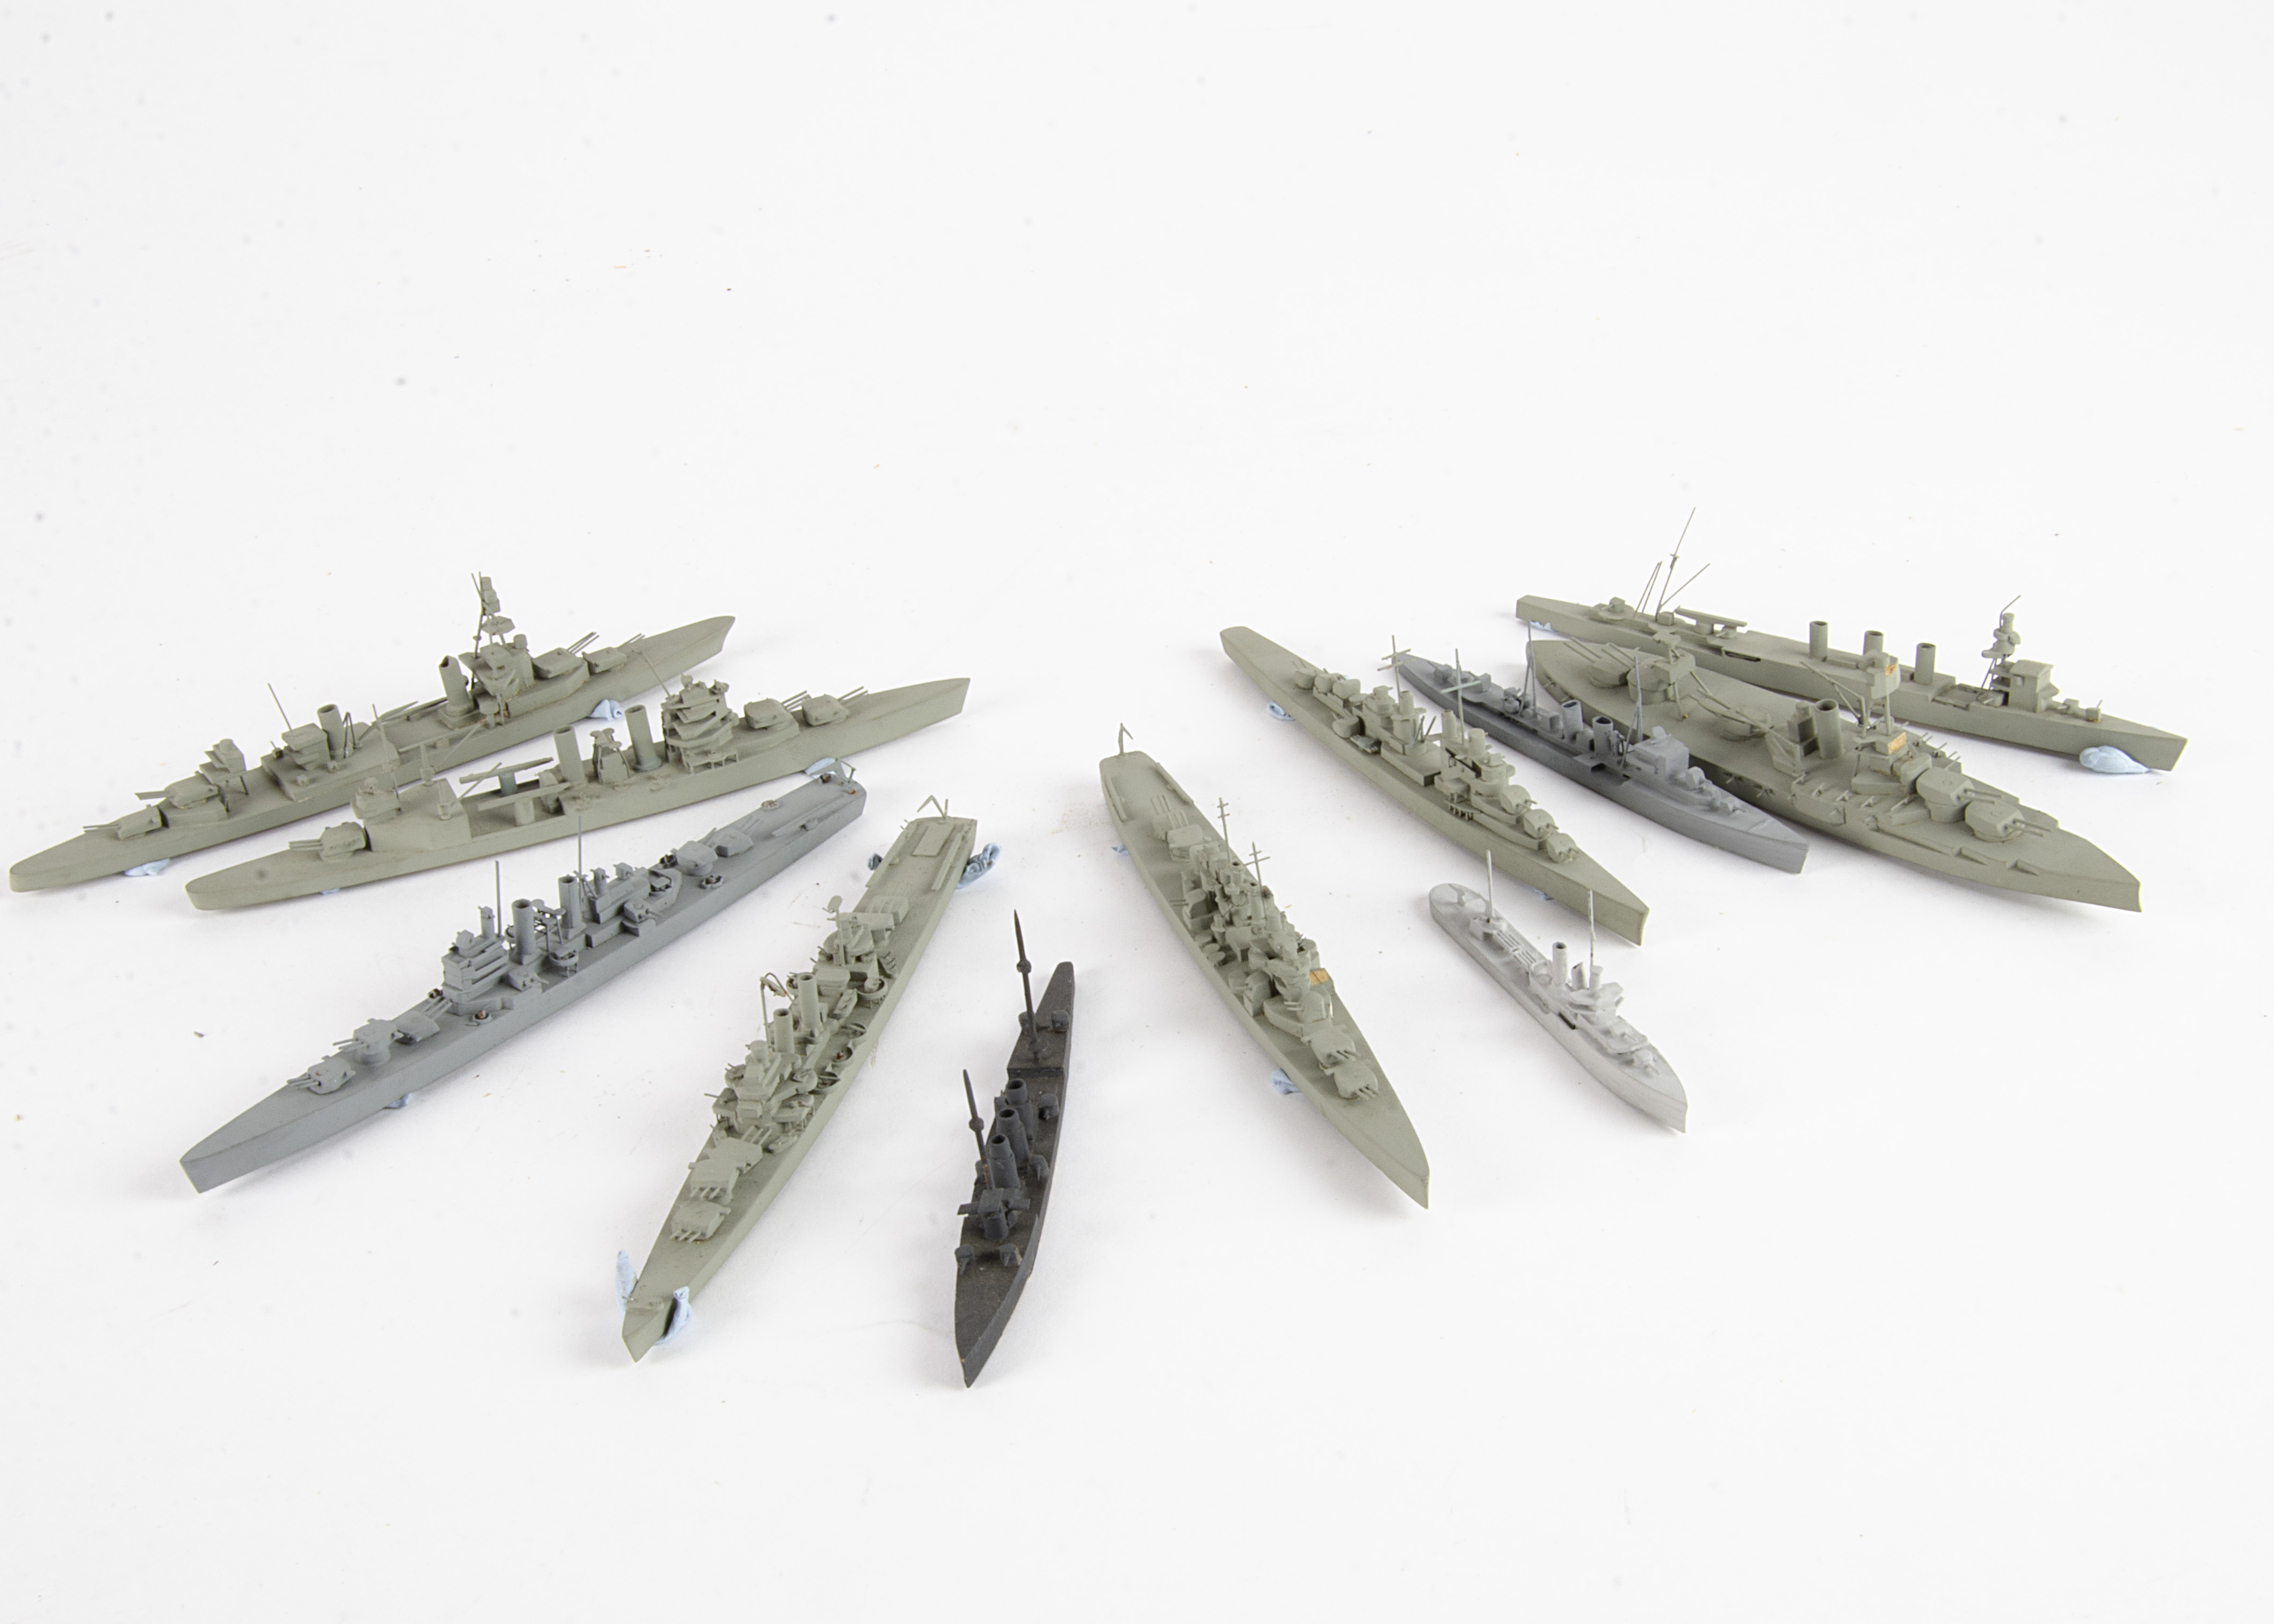 Bassett-Lowke Naval Waterline Models 1/1200 Scale, all with Bassett Lowke paper labels includes,